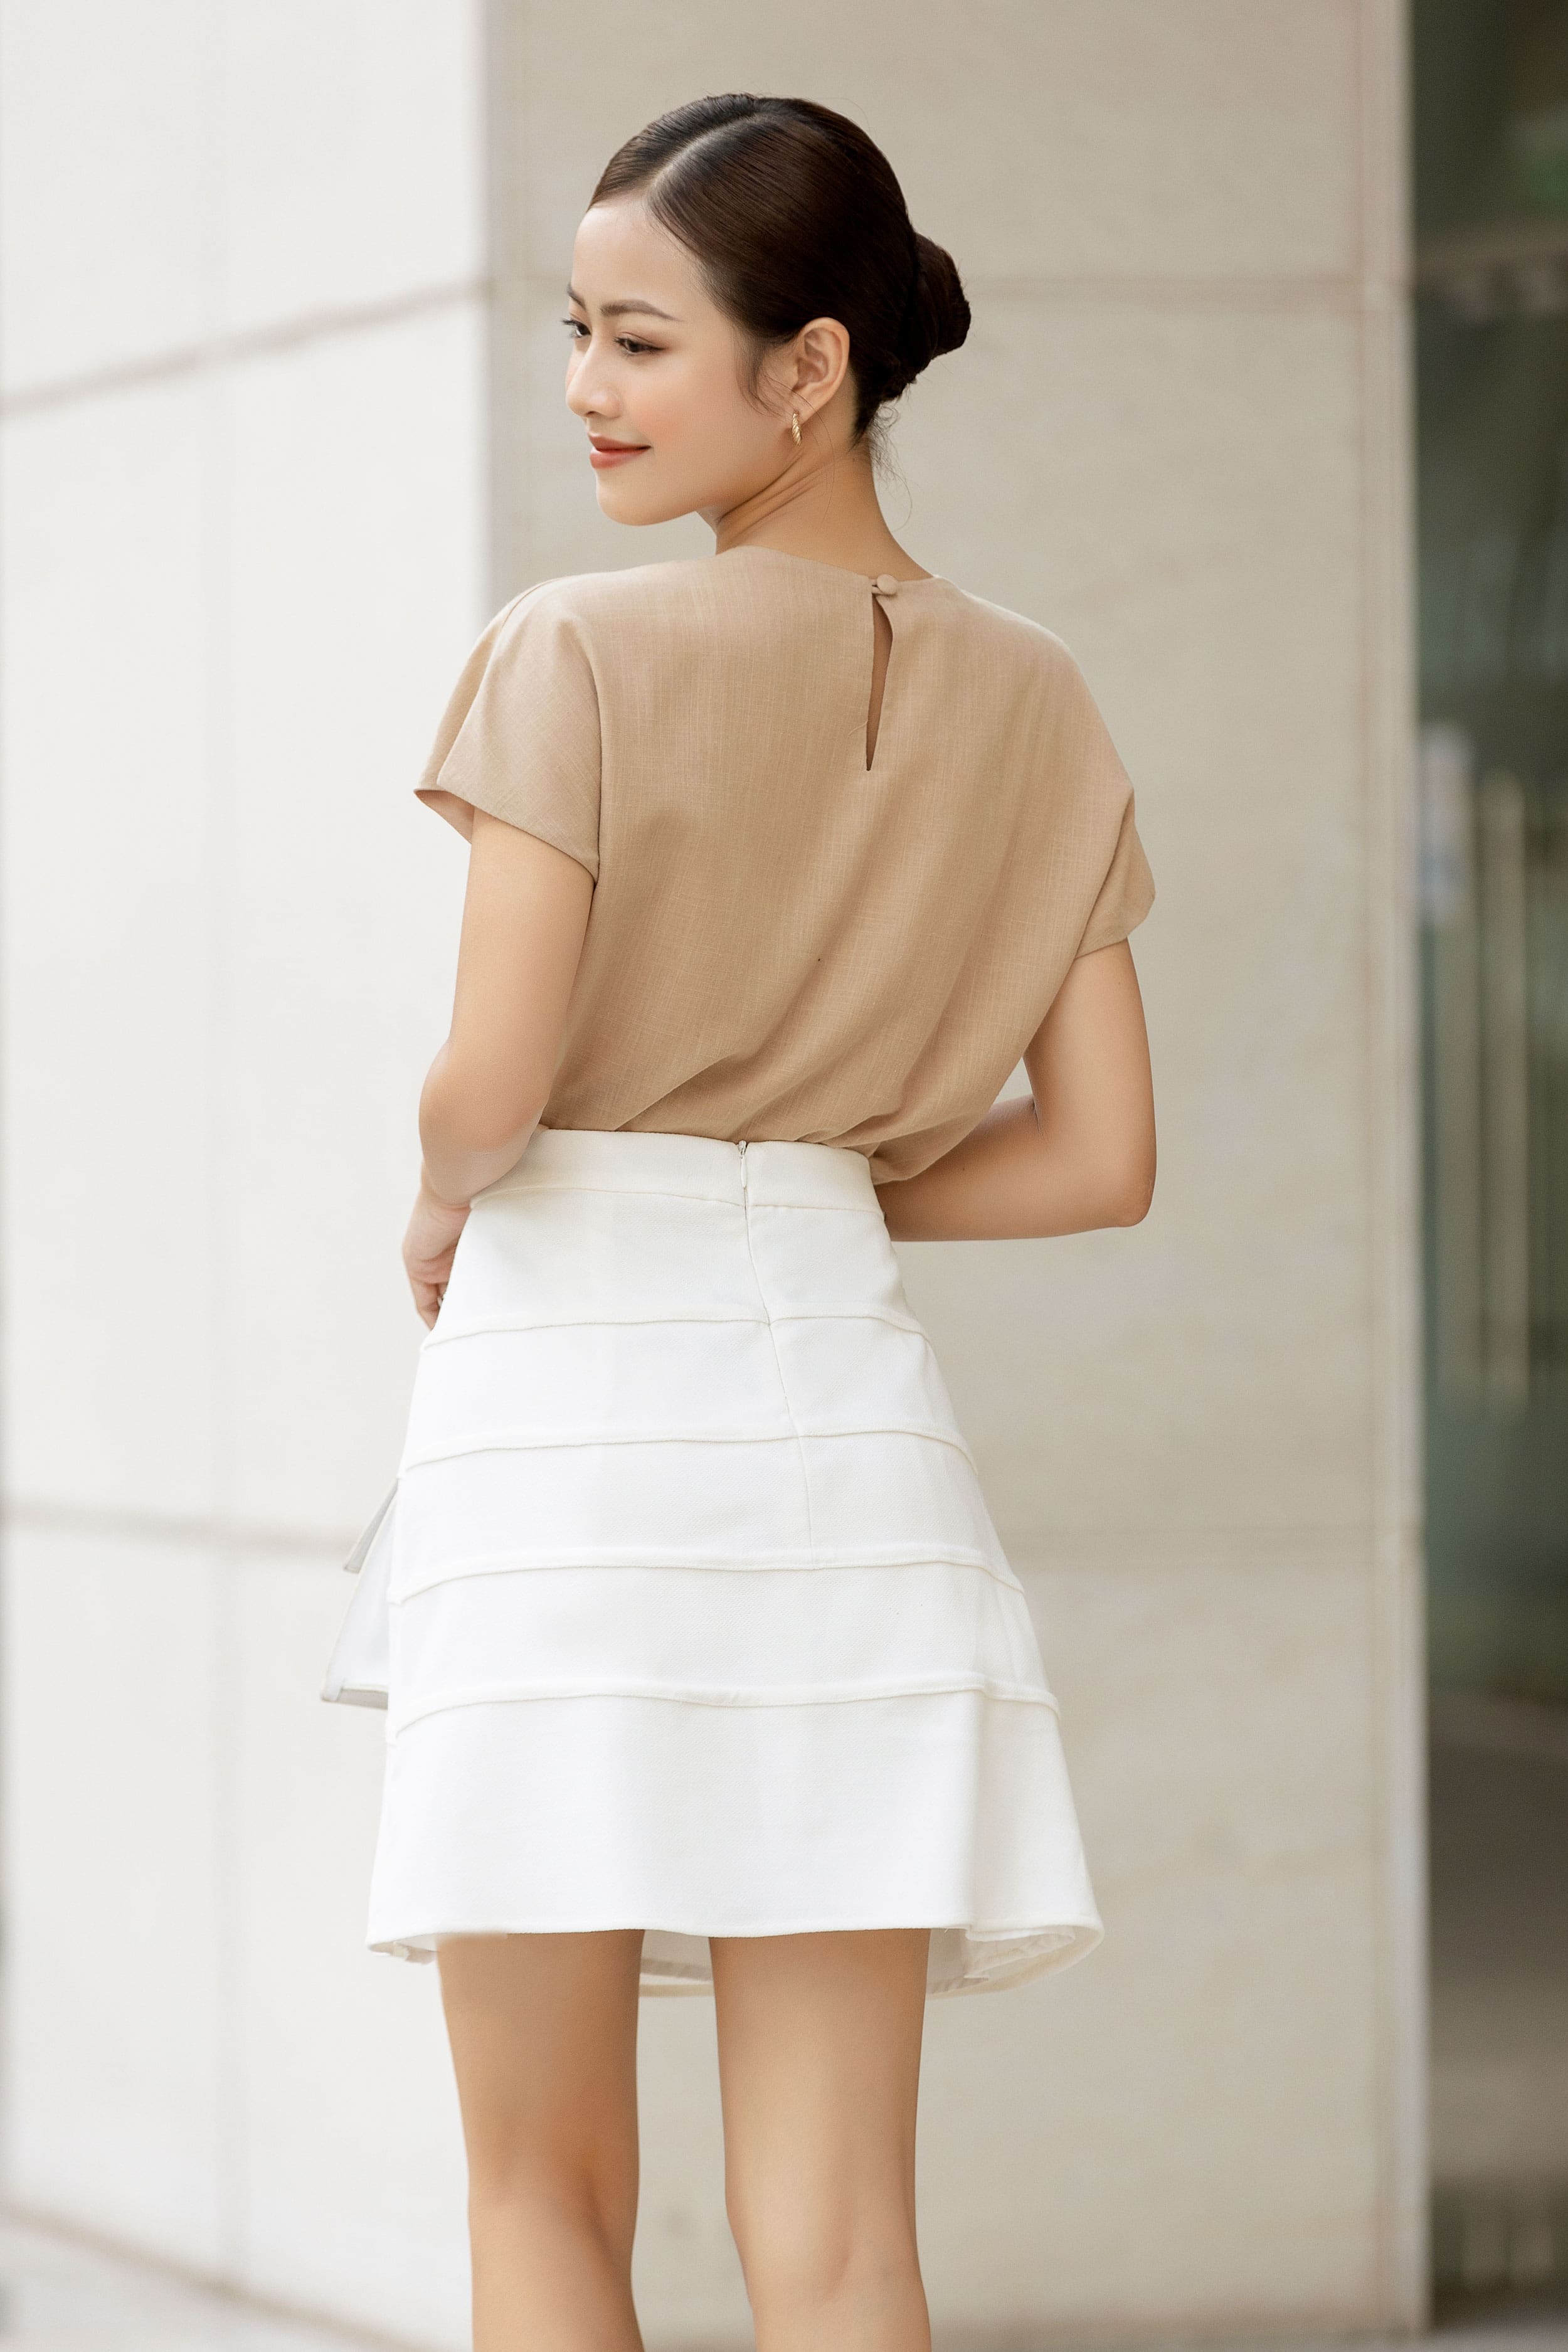 OLV - Chân váy White Buttoned Skirt